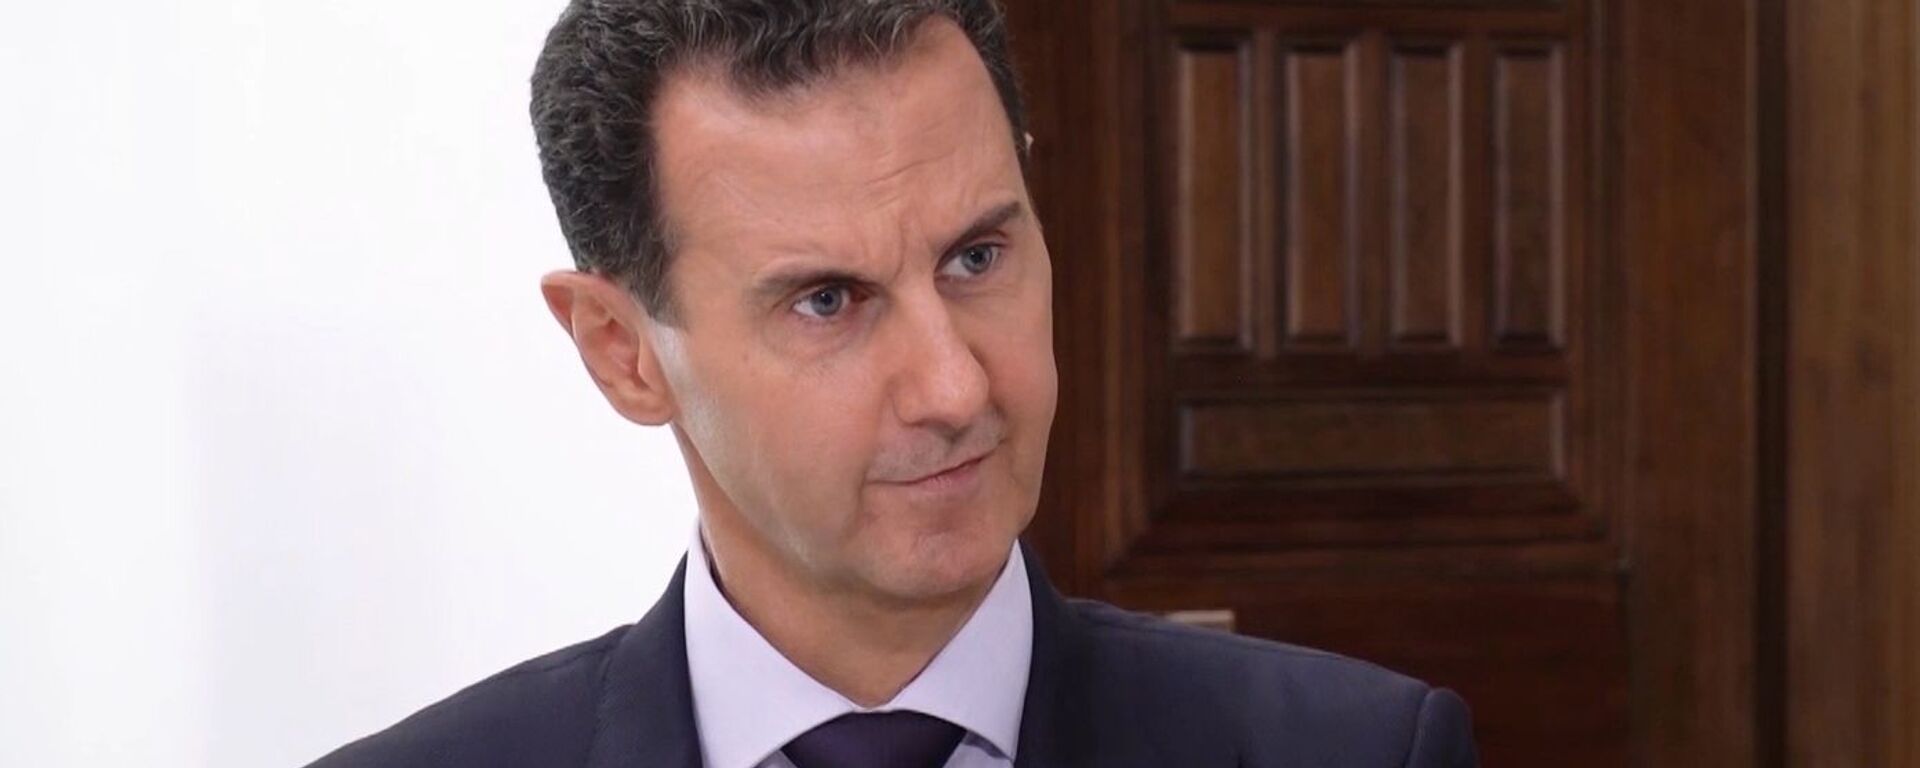 El presidente de Siria, Bashar Asad - Sputnik Mundo, 1920, 03.05.2021